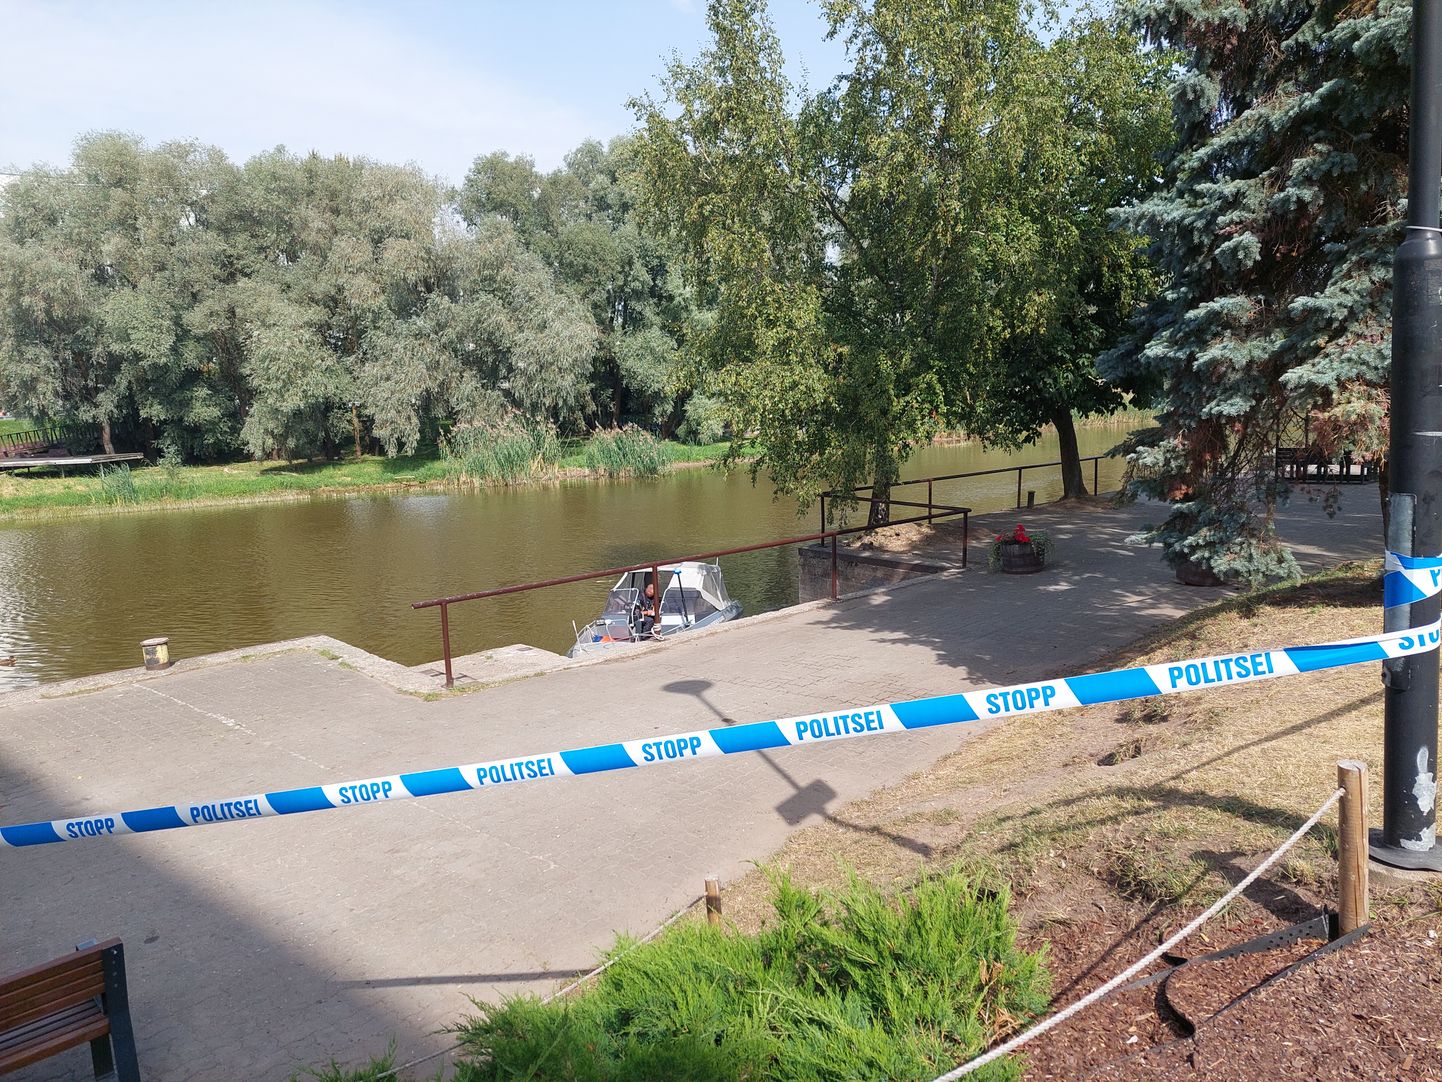 Kolmapäeva keskpäeva paiku oli Tartu avaturu kõrval asuv jõekallas ümbritsetud politseilintidega. Kohal oli ka politseikaater.